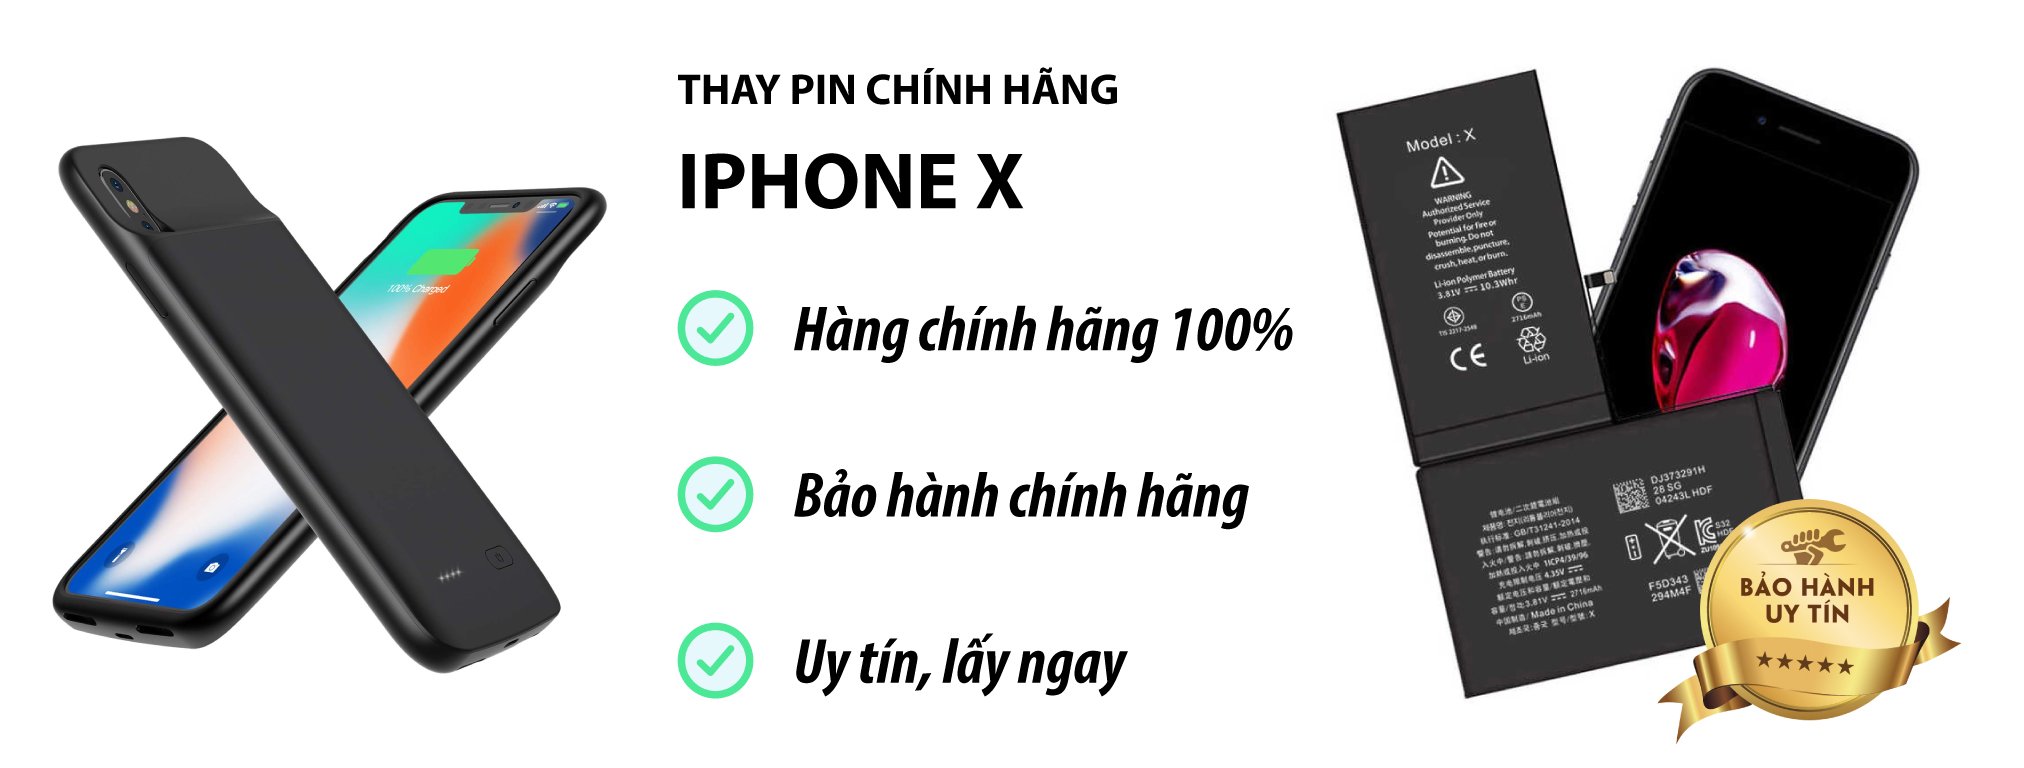 thay pin iphone x chinh hang Ha Noi